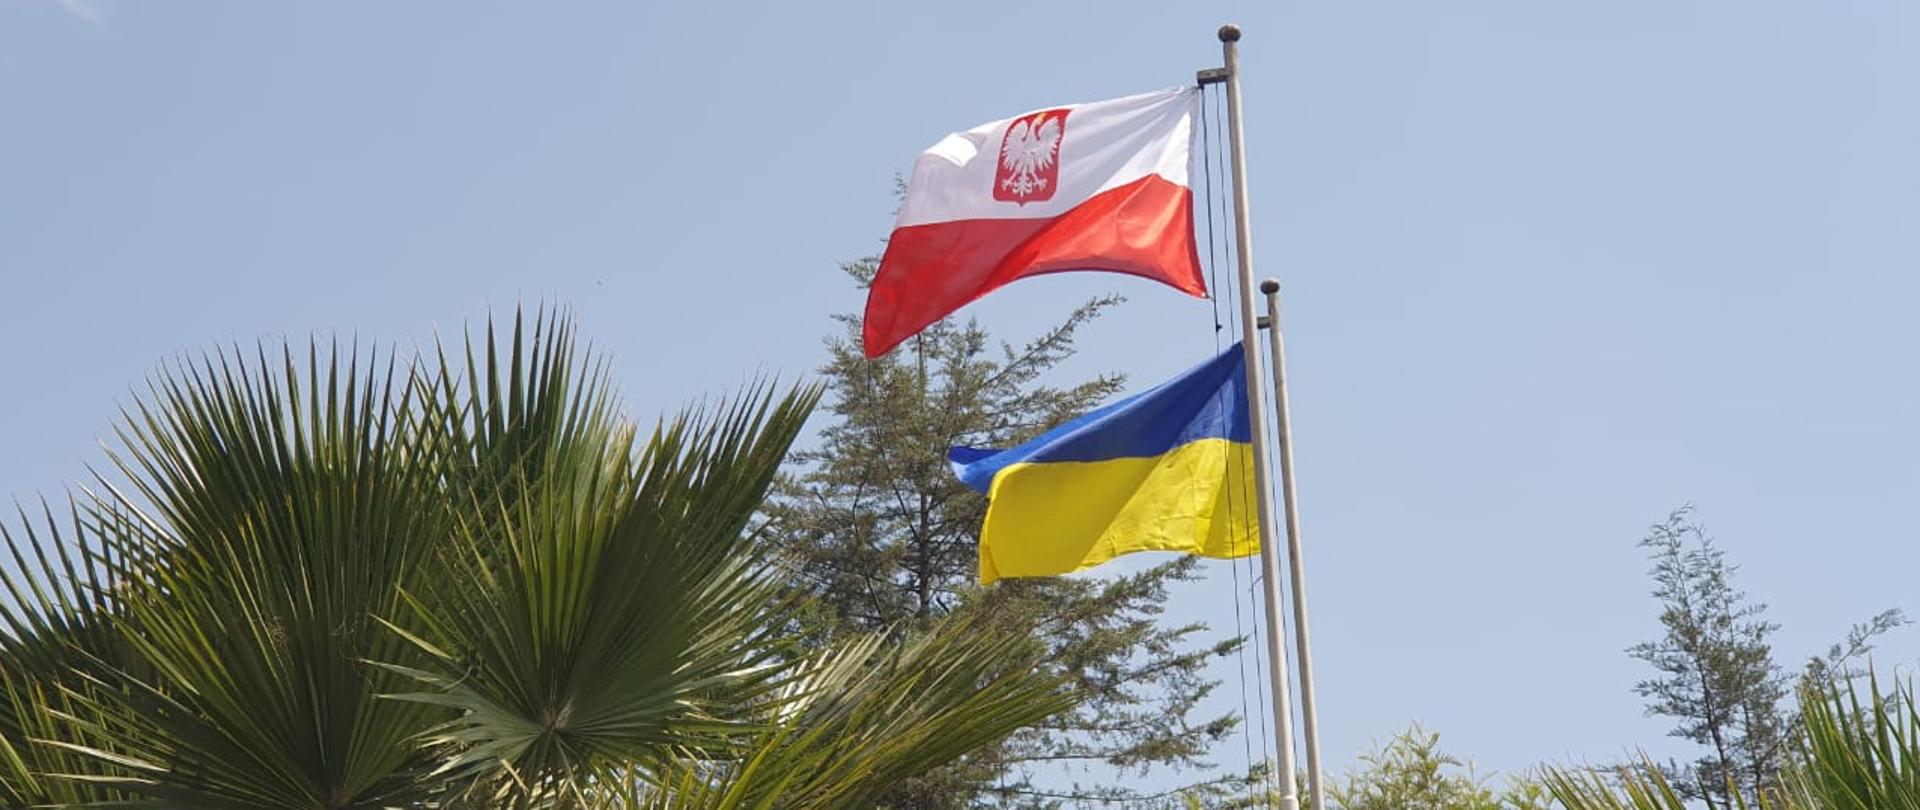 24.02.2023 r. - ceremonia podniesienia flagi ukraińskiej